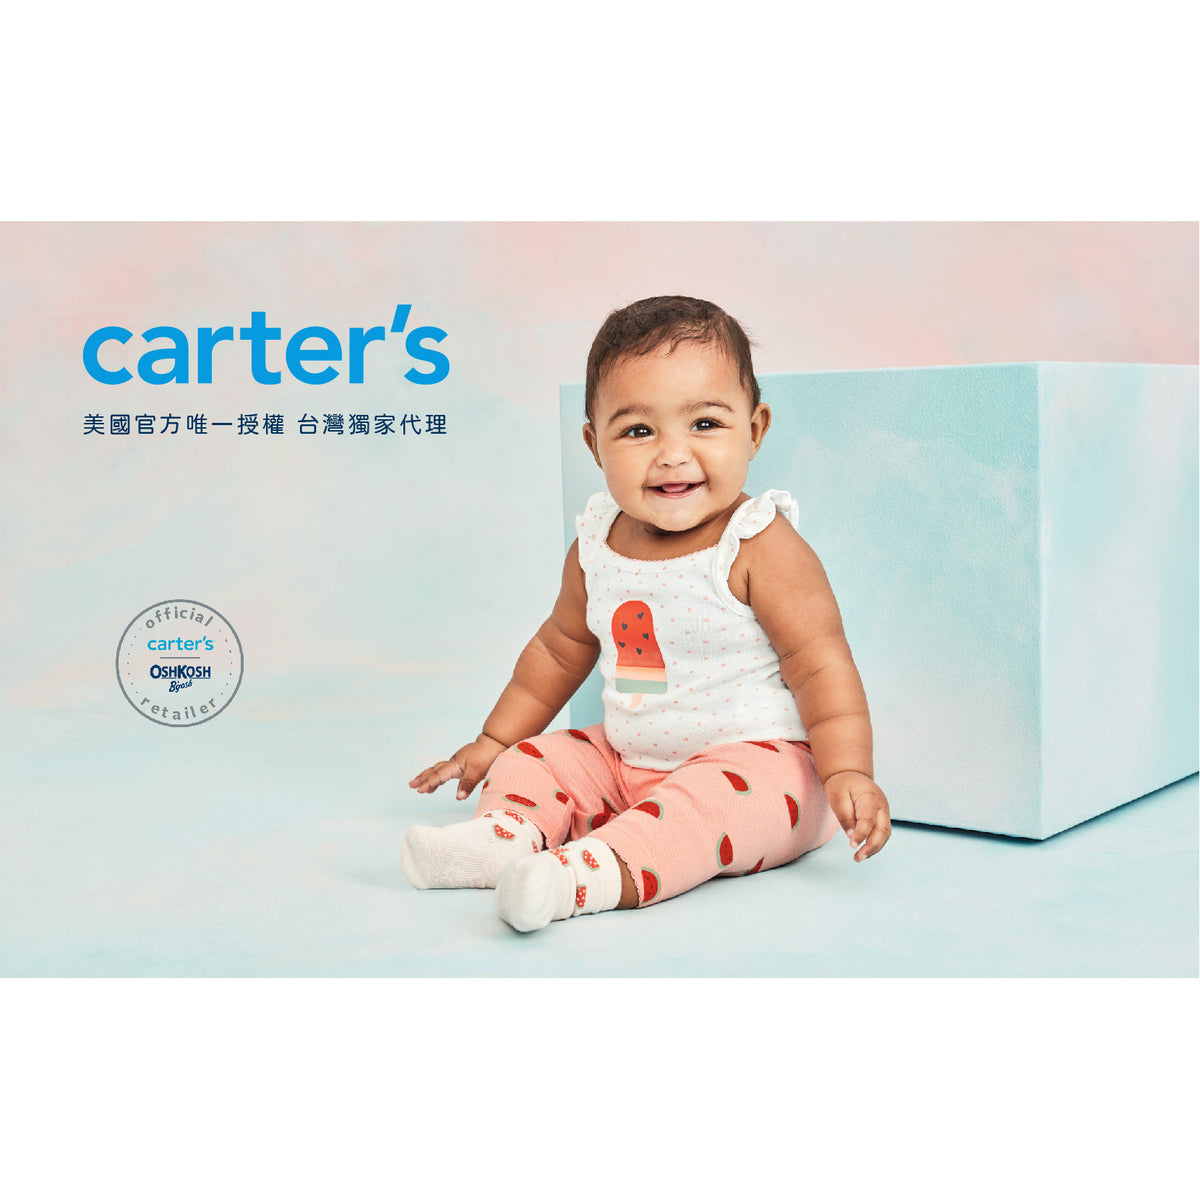 Carter's 米灰抽繩短褲(6M-24M)